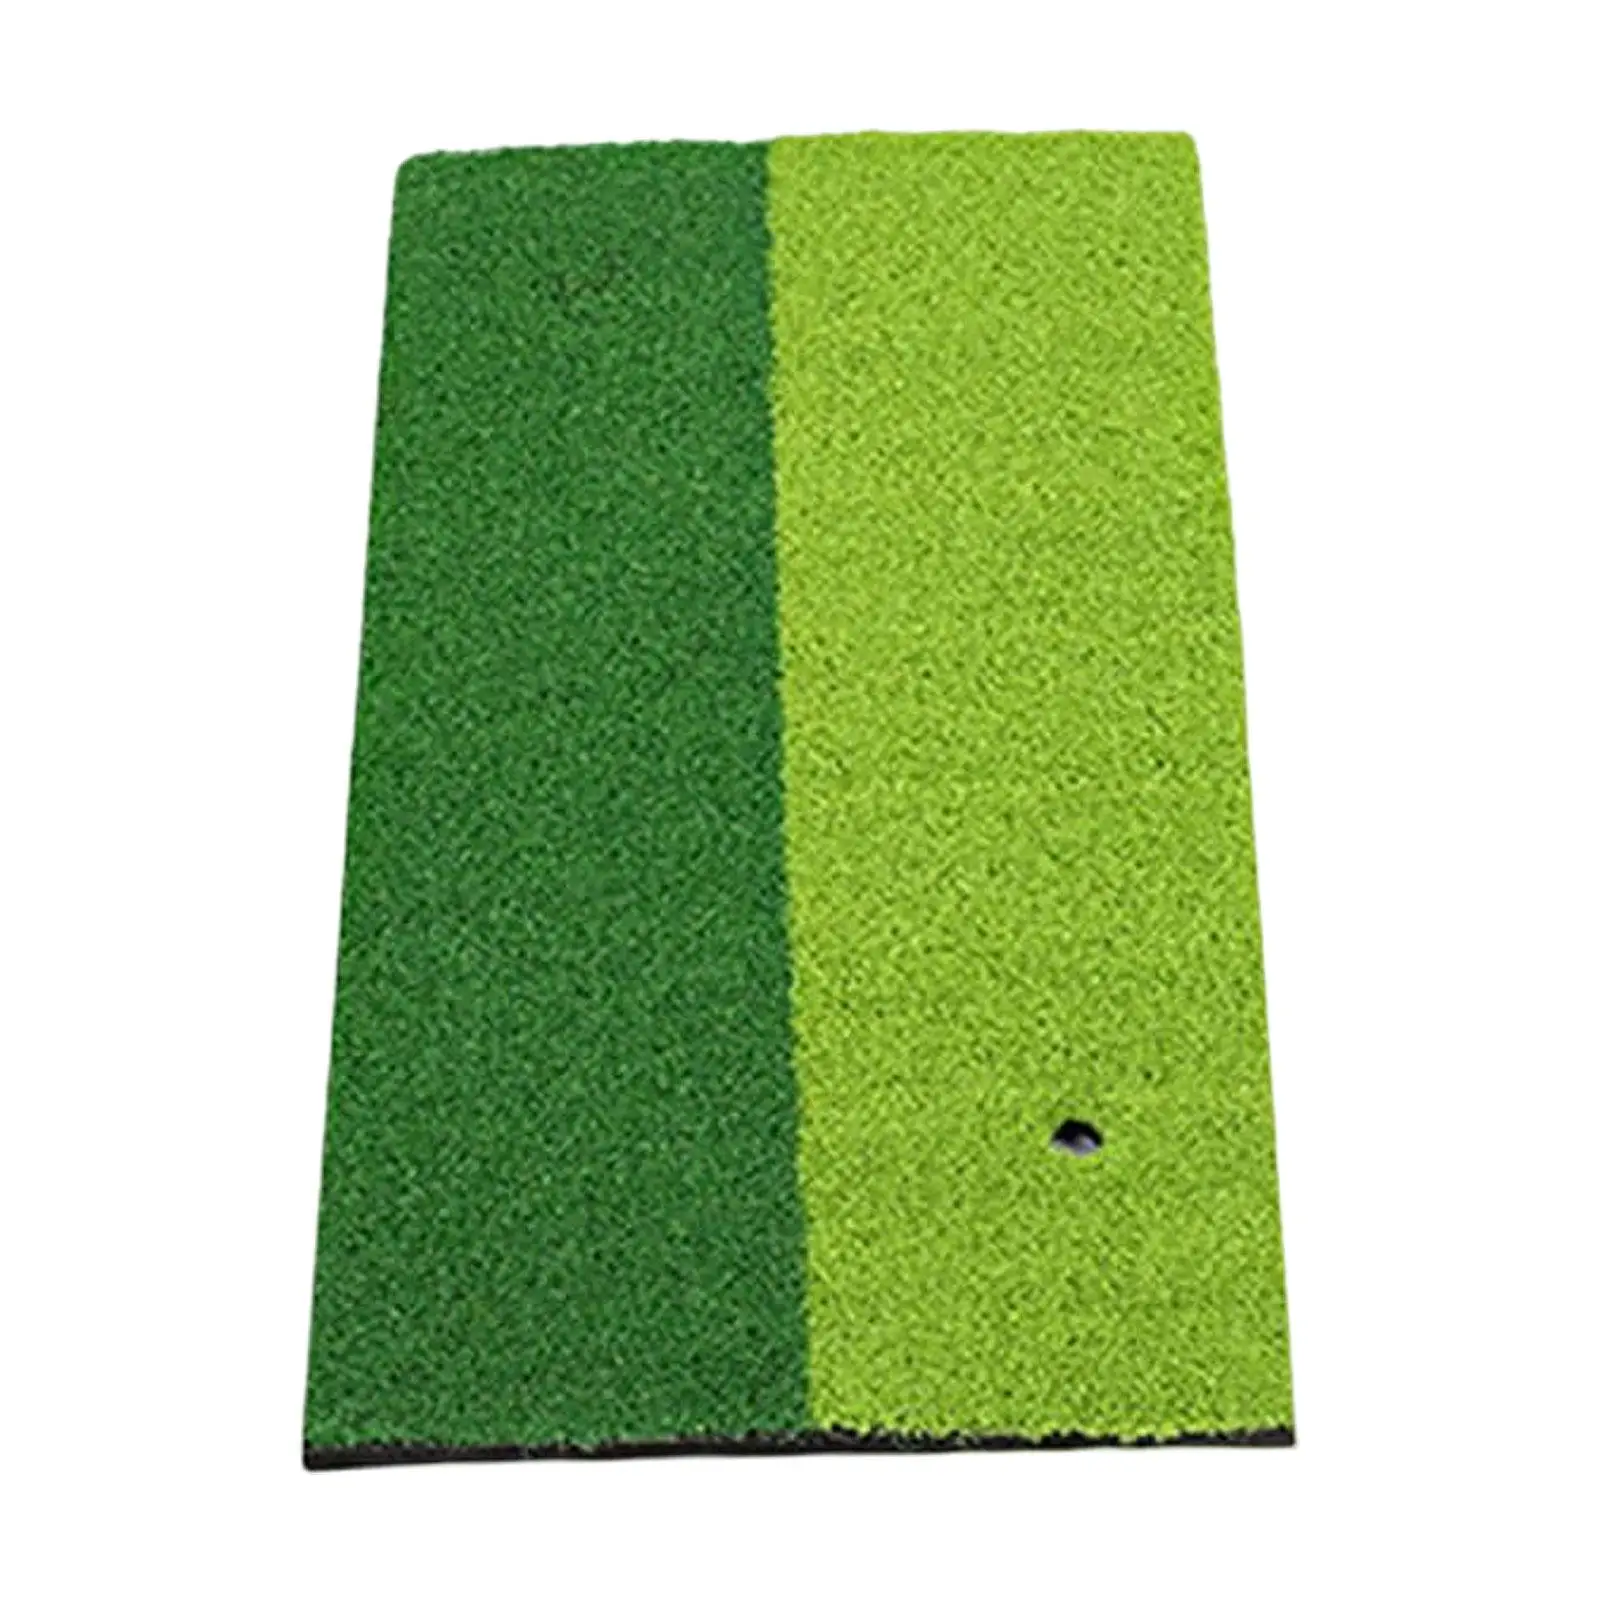 Golf Hitting Mat Grass Mat Durable Portable Exercise Mat Turf Play Mat Golf